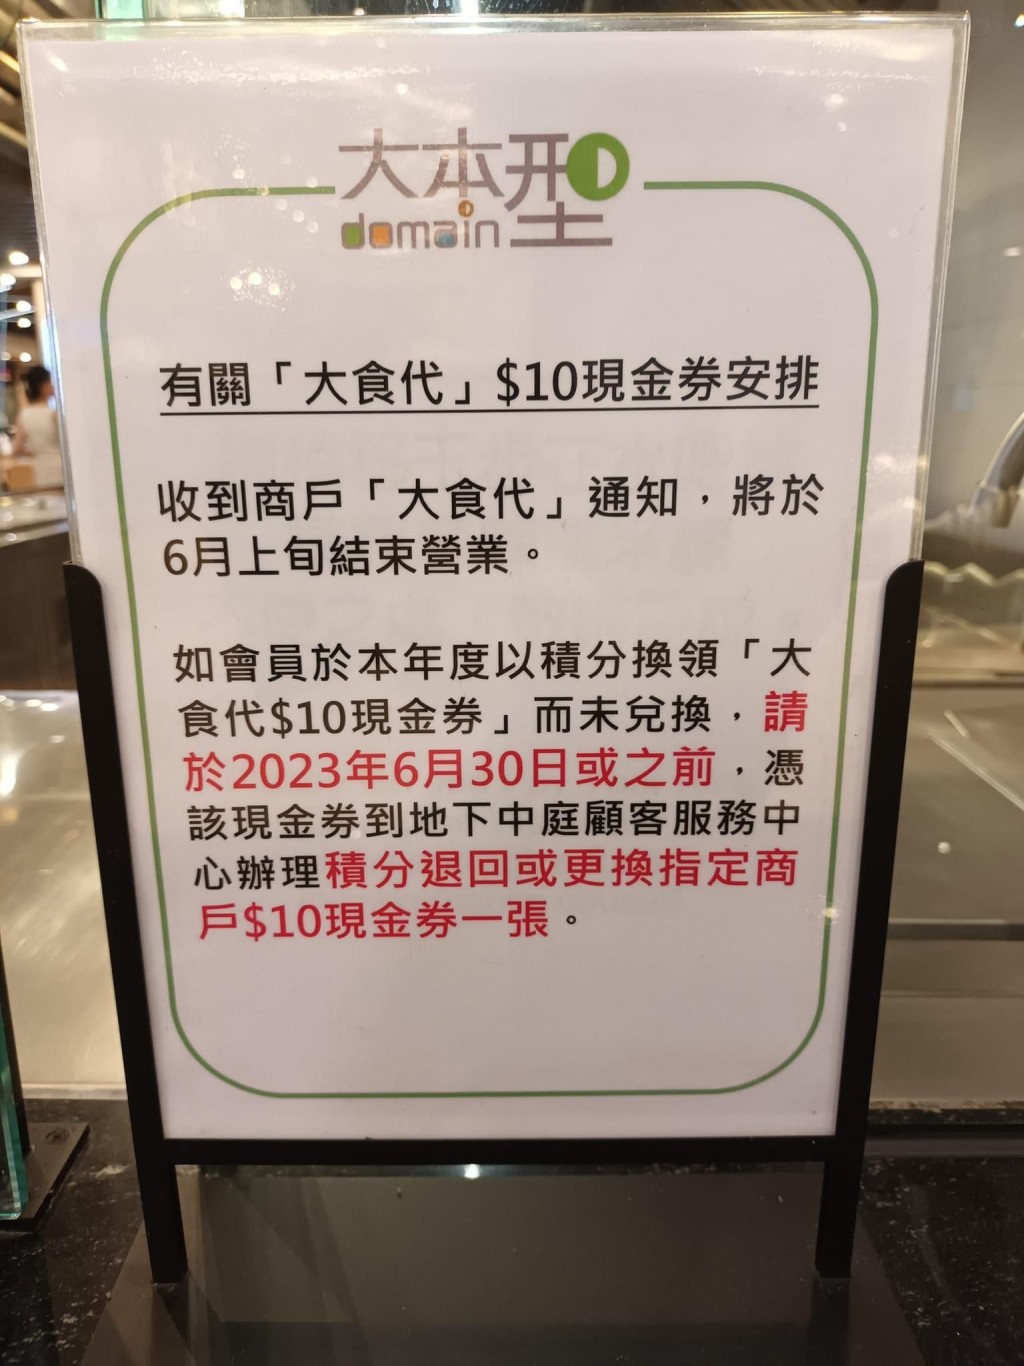 相片中另一告示详述「大食代」$10现金券安排。（图片来自facebook@香港茶餐厅及美食关注组）